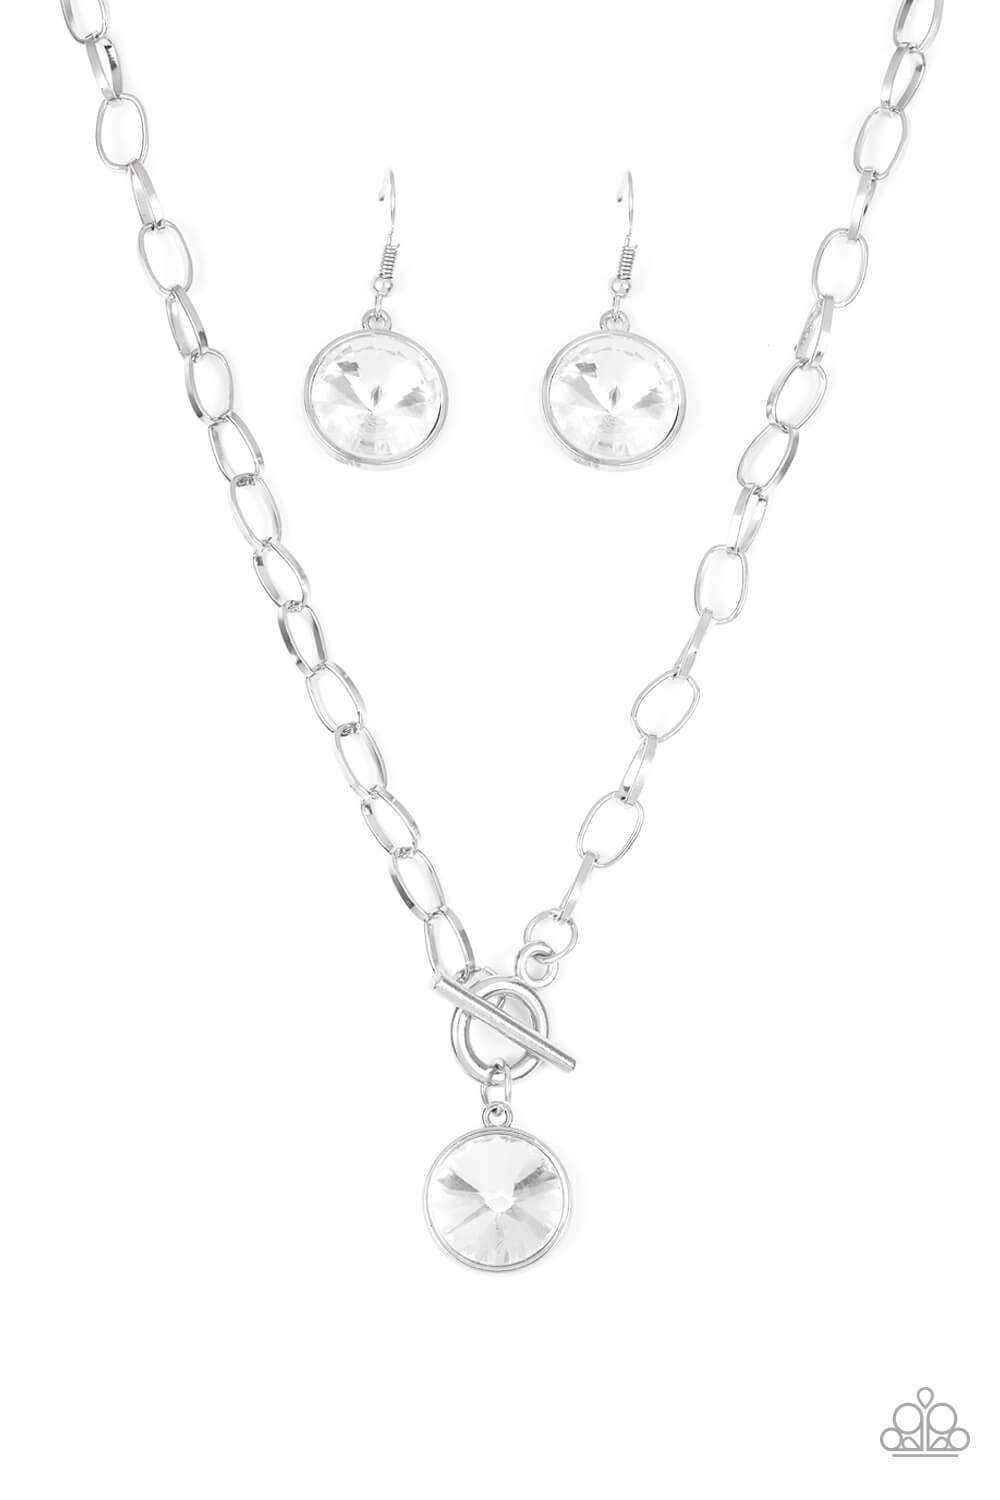 She Sparkles On - Silver Necklace Set & Bracelet Combo - Princess Glam Shop